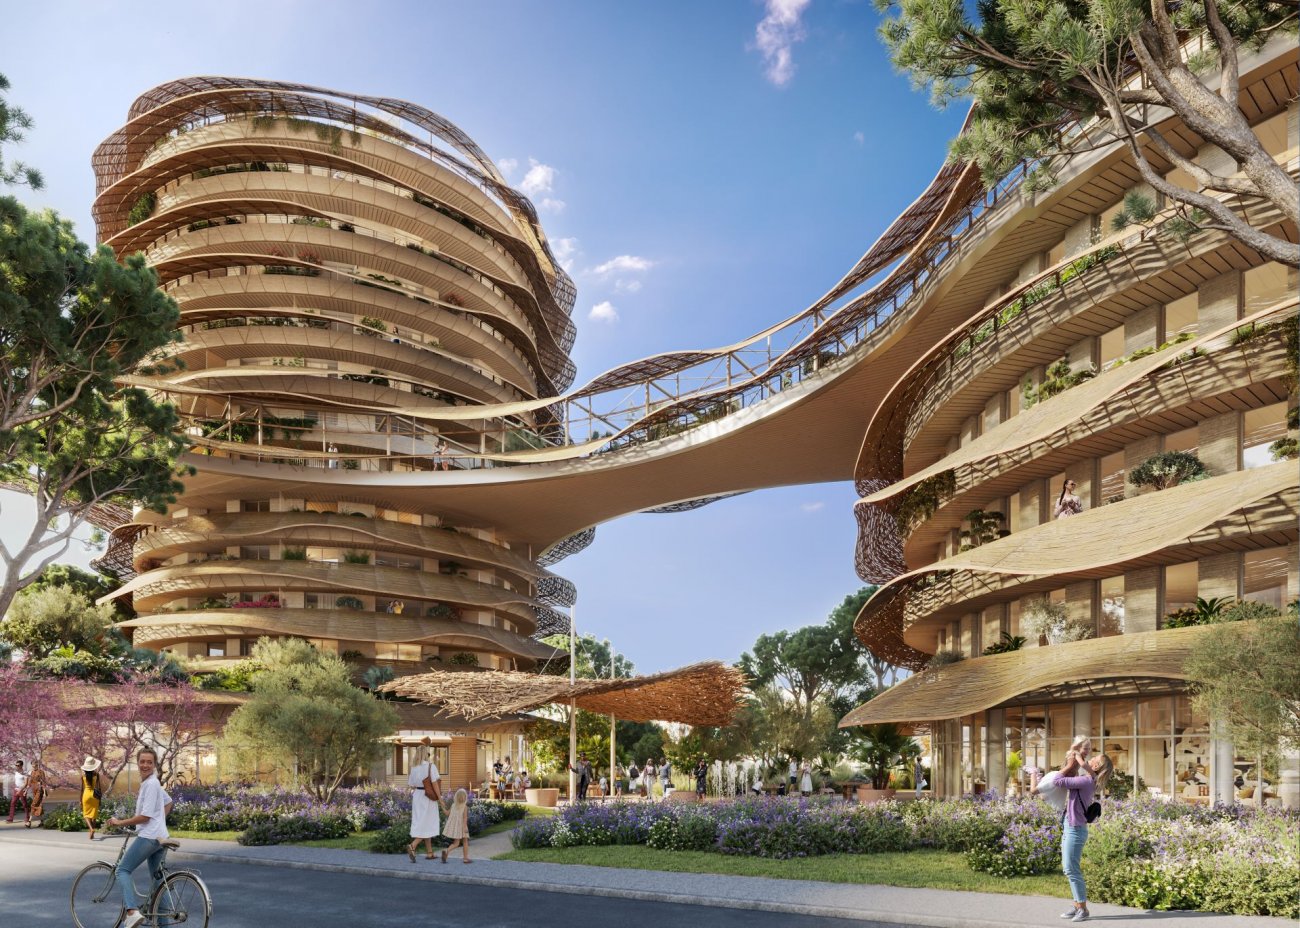 Oasis : diaporama de cette nouvelle Folie Architecturale de la ZAC Ovalie de Montpellier